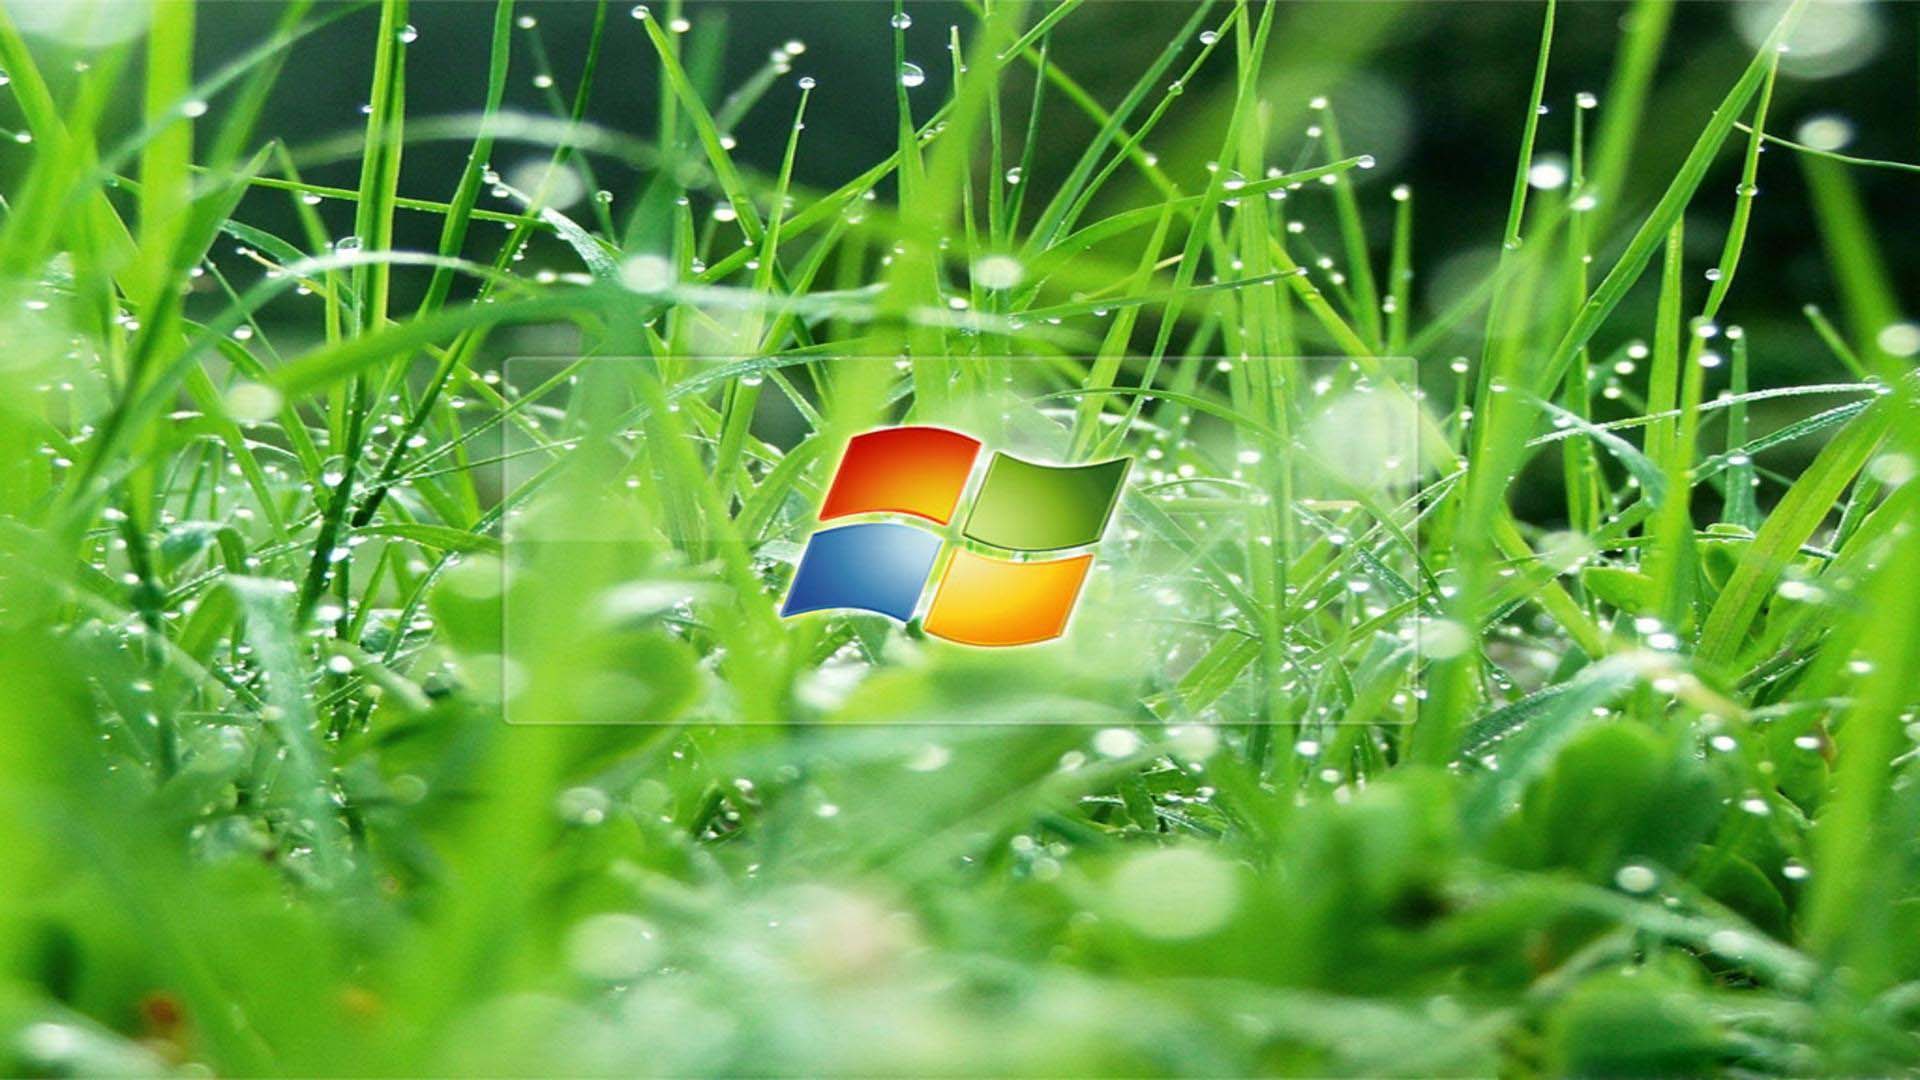 green grass with windows 8 logo wallpaper